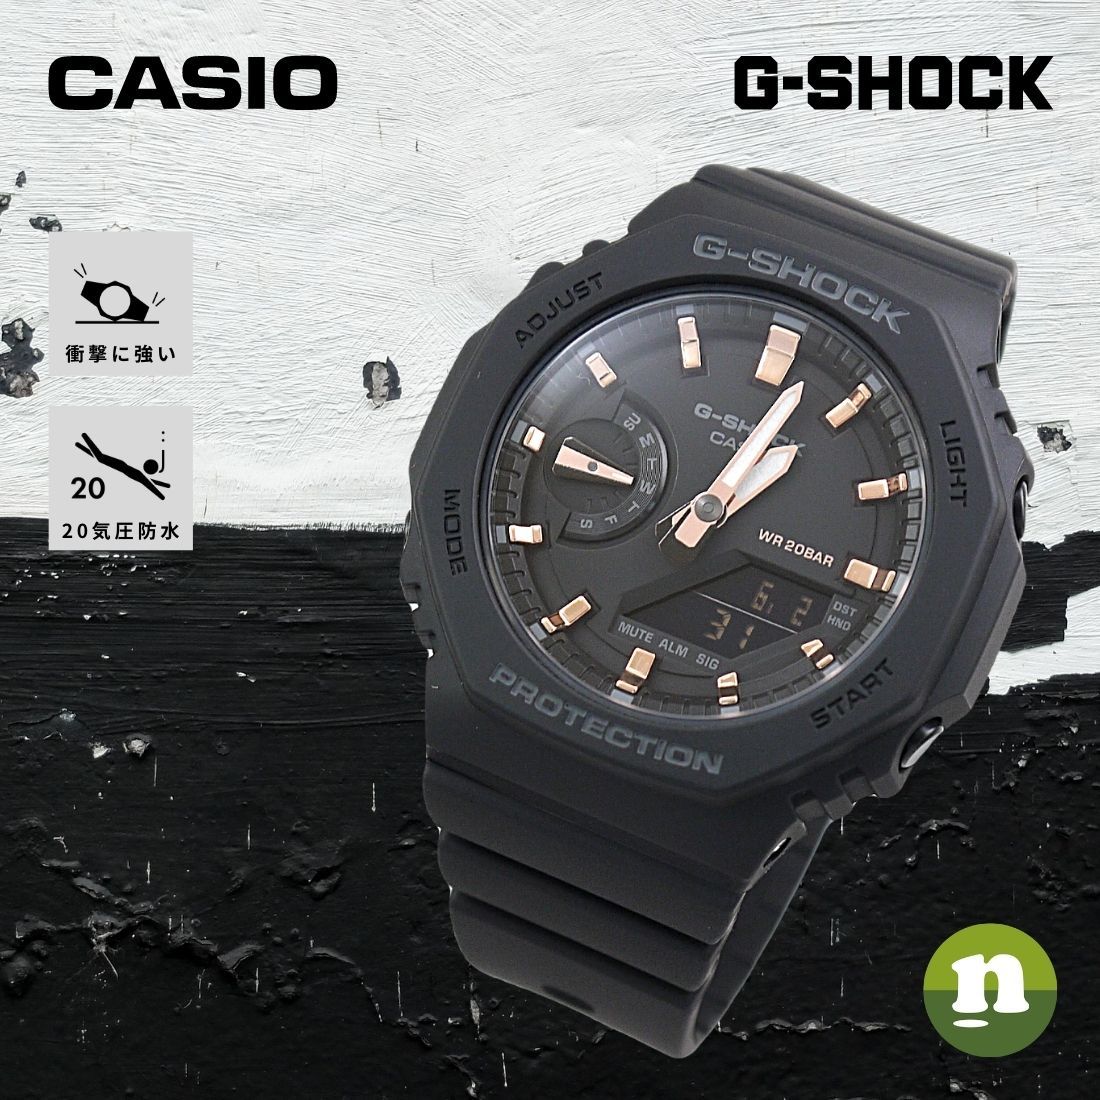 【新入荷品】カシオ CASIO Gショック G-SHOCK デジアナ メンズ 腕時計 GBA-400-1A9 ブラック/ゴールド ブラック コラボレーションモデル